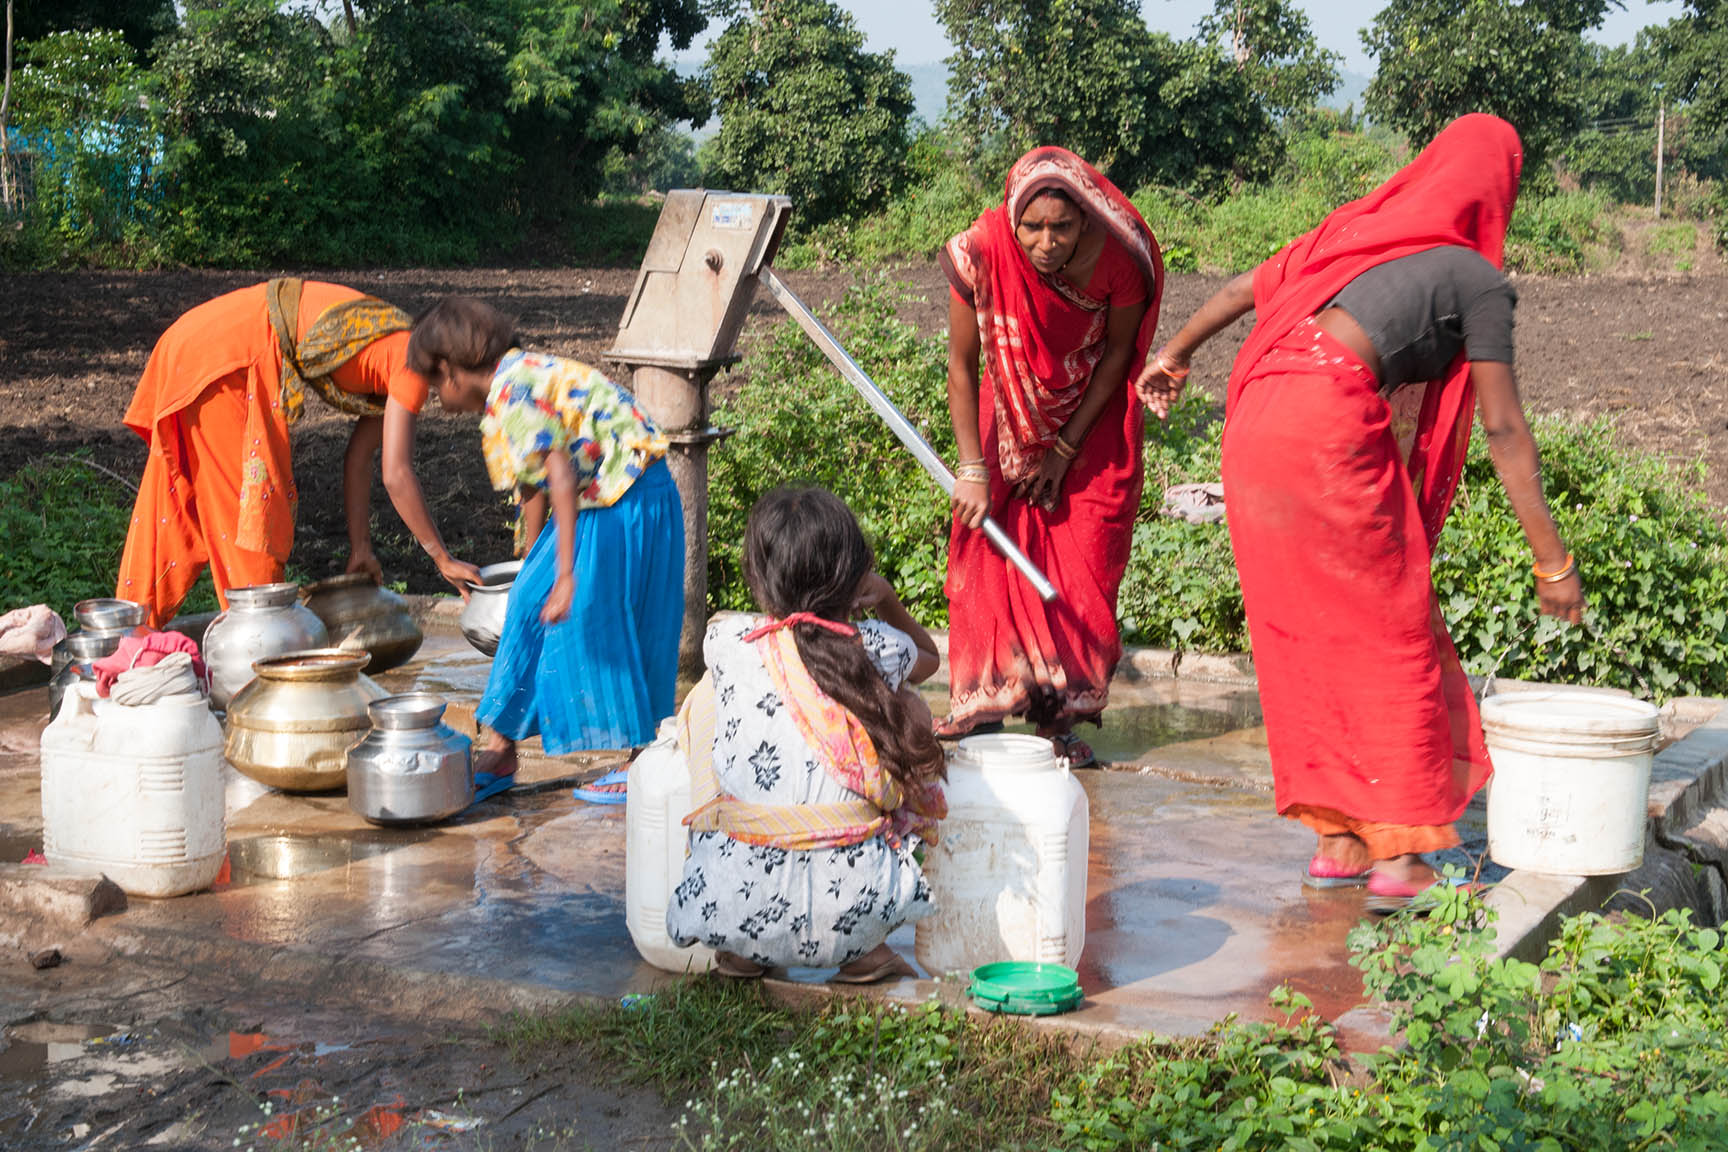 Wasserversorgung ist bei Indiens Landbevölkerung Frauensache